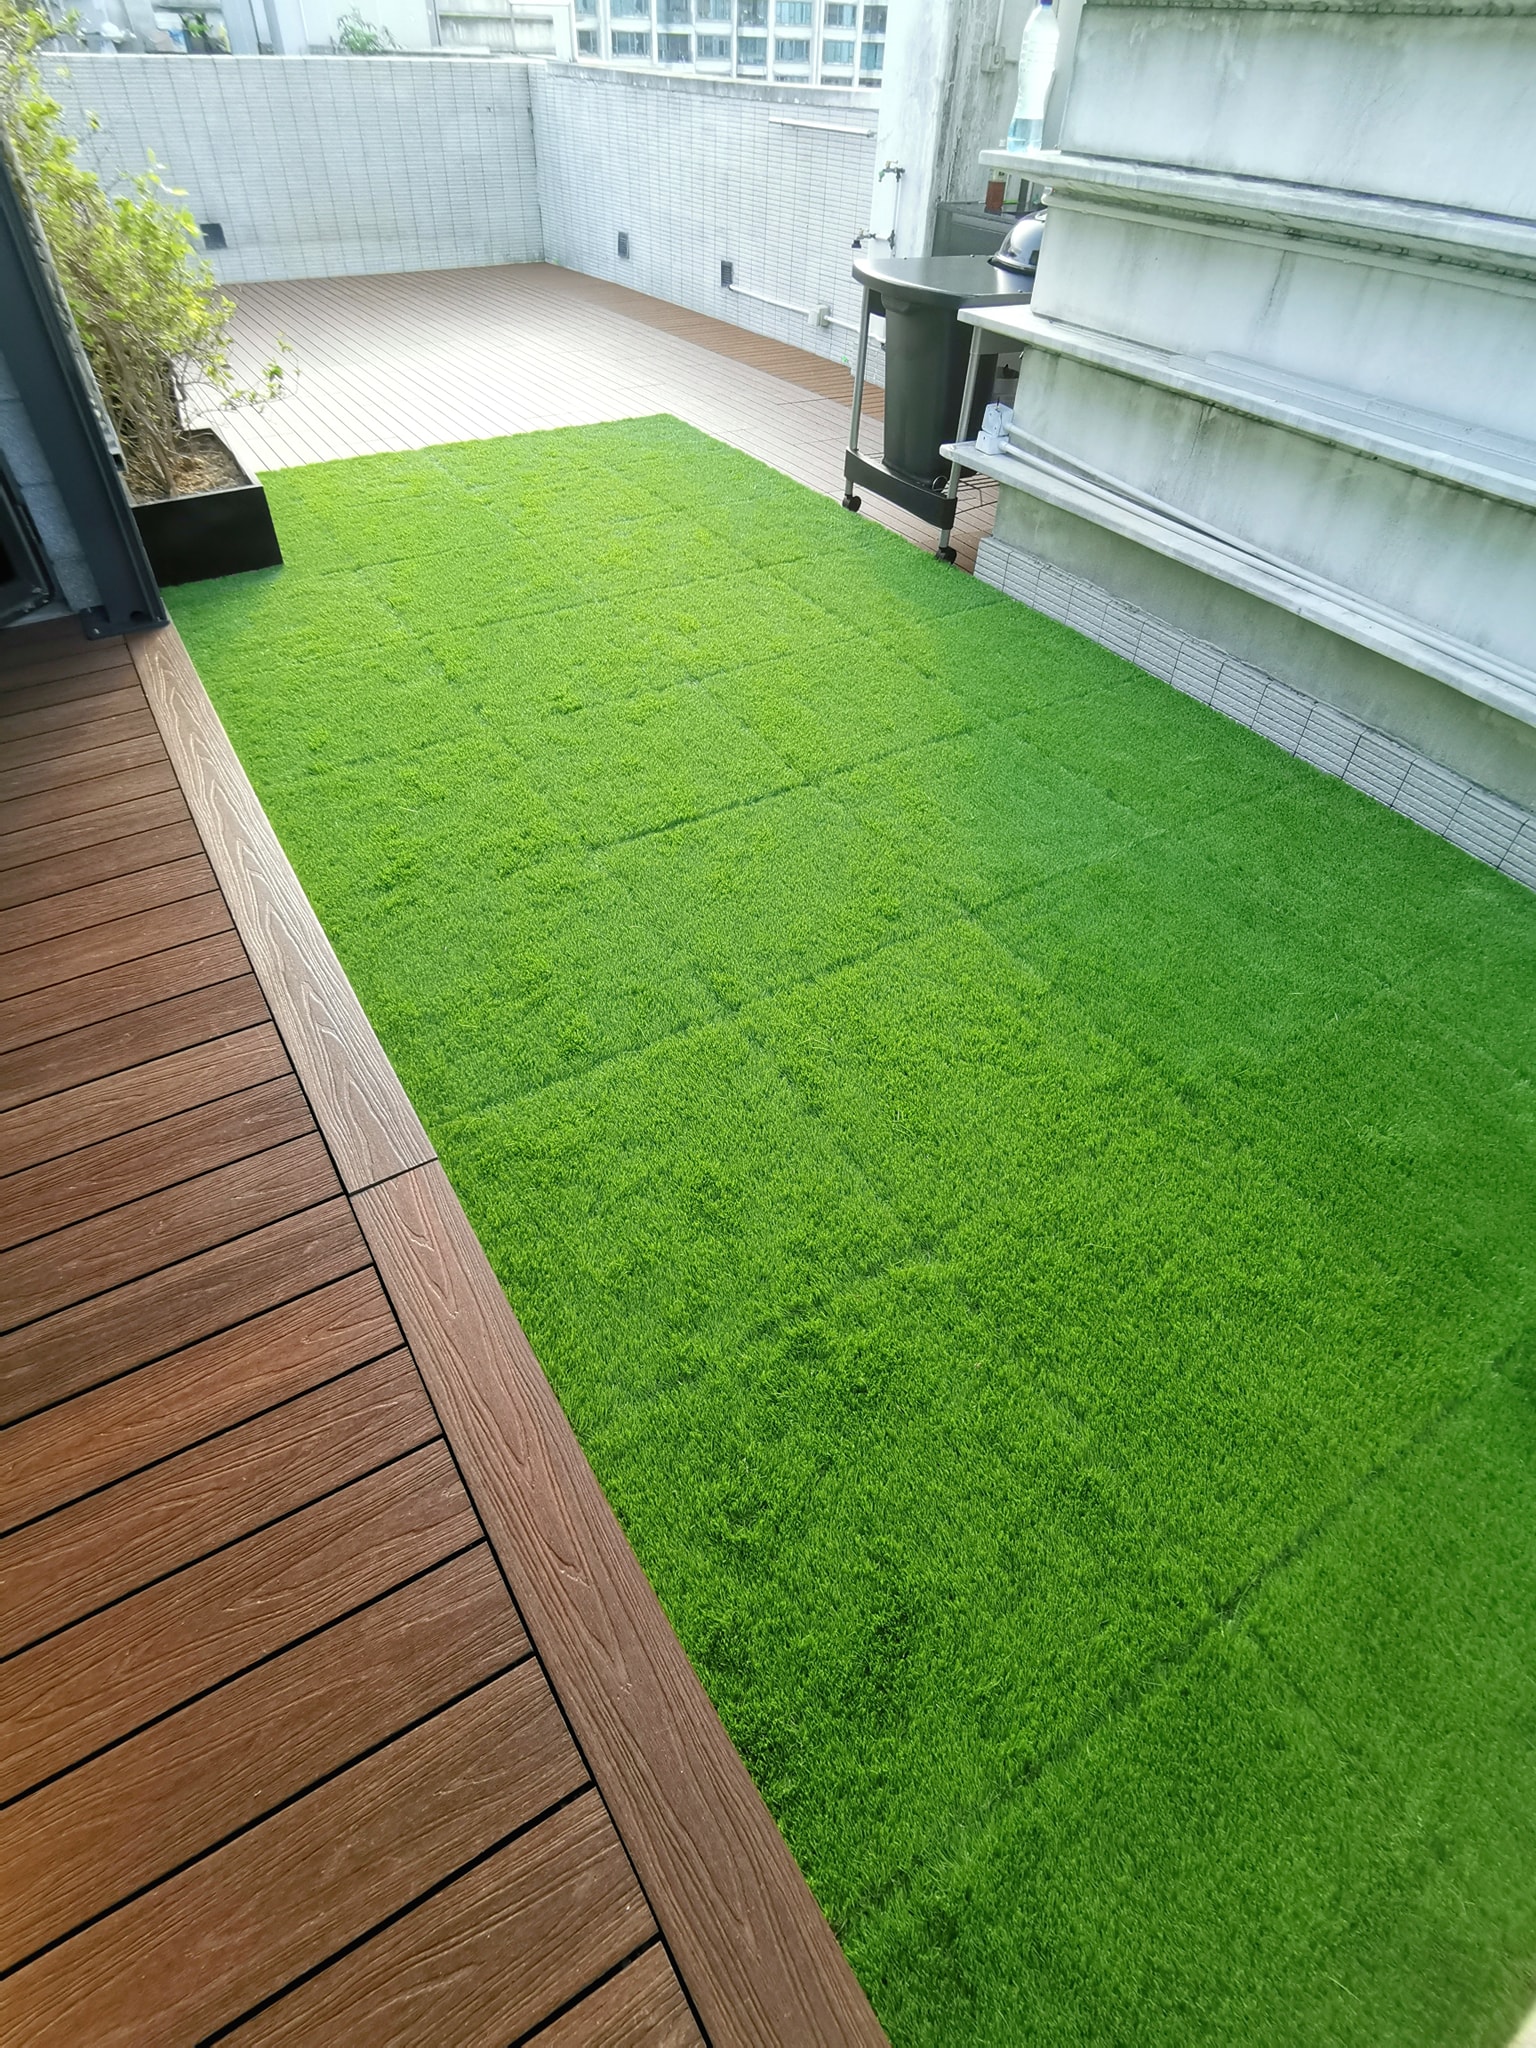 香港白石角 天賦海灣 天台 Newtechwood 戶外地板 人造草地板 grass deck